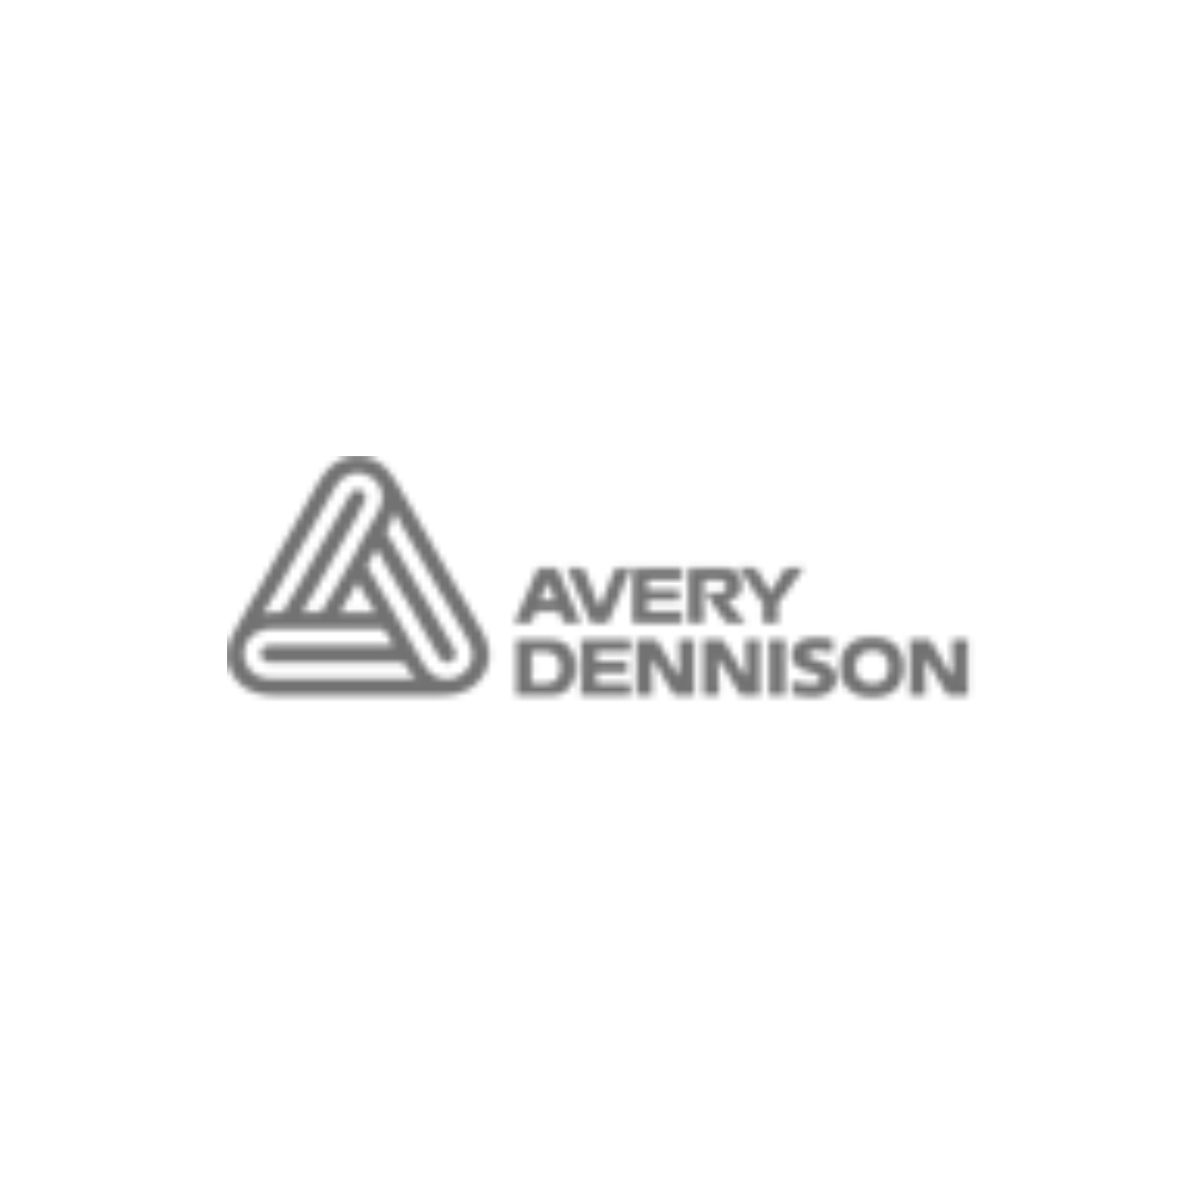 Distribuidor oficial Avery en España